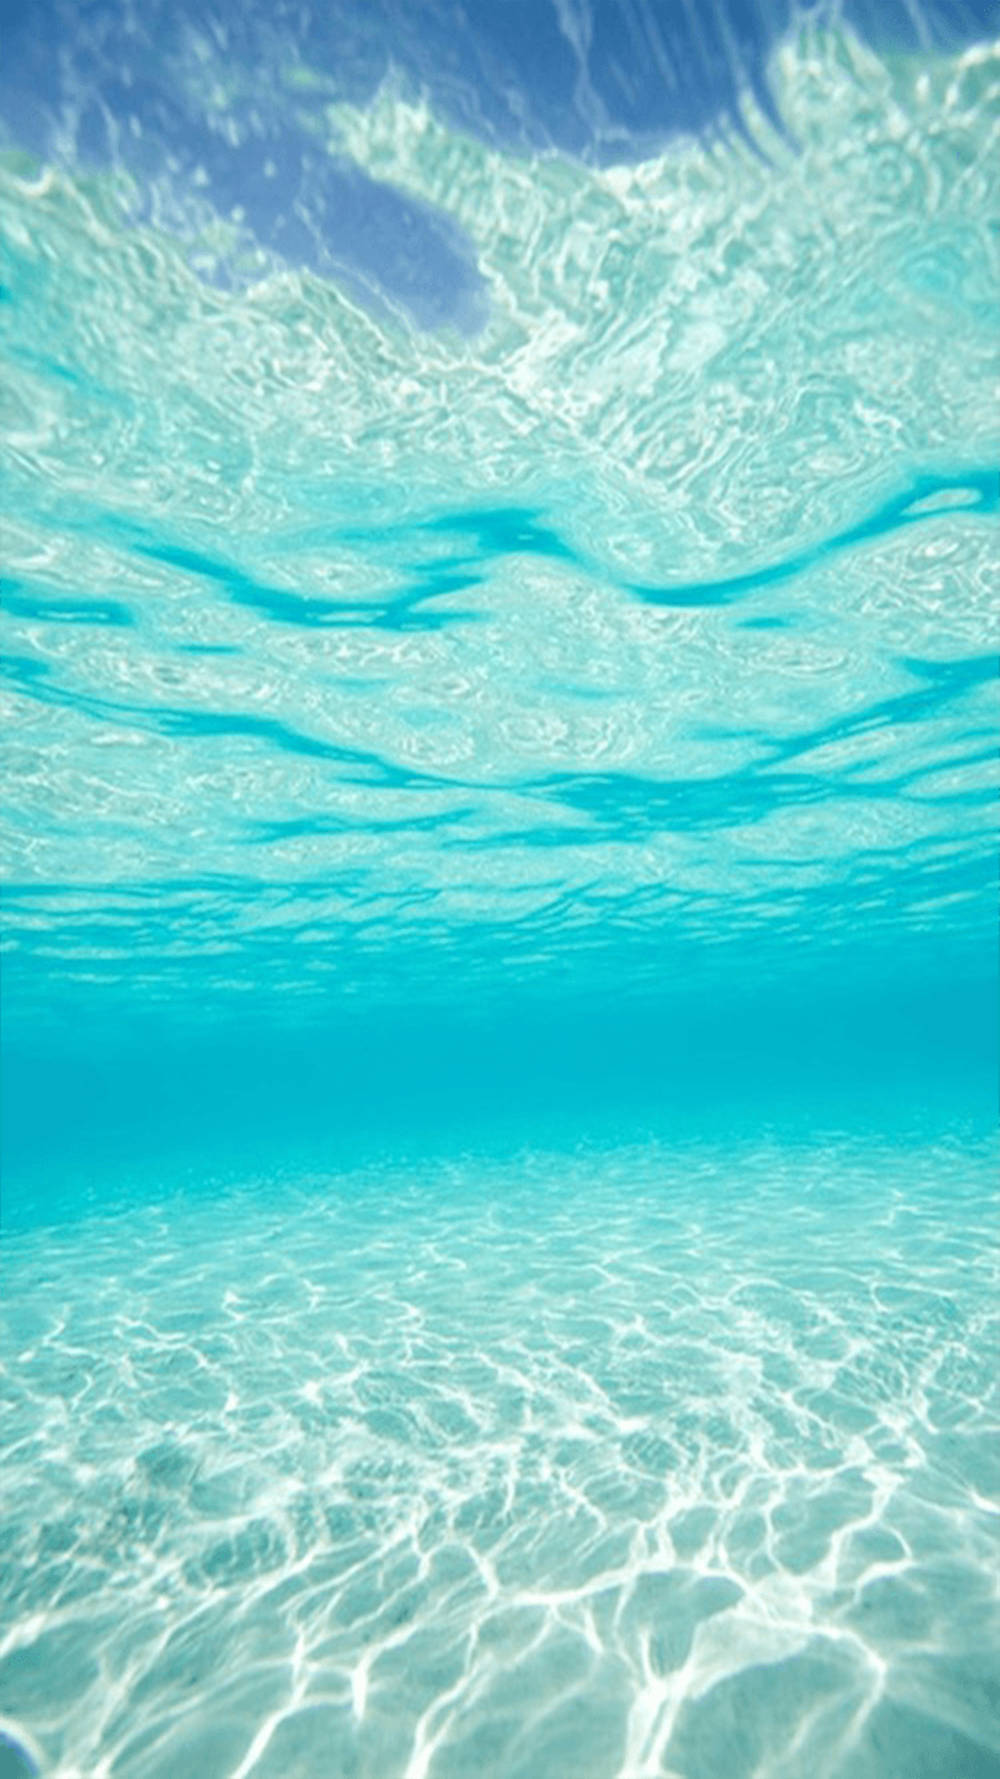 Ozeanhintergrundbild Für Das Iphone - Unterwasseransicht Wallpaper